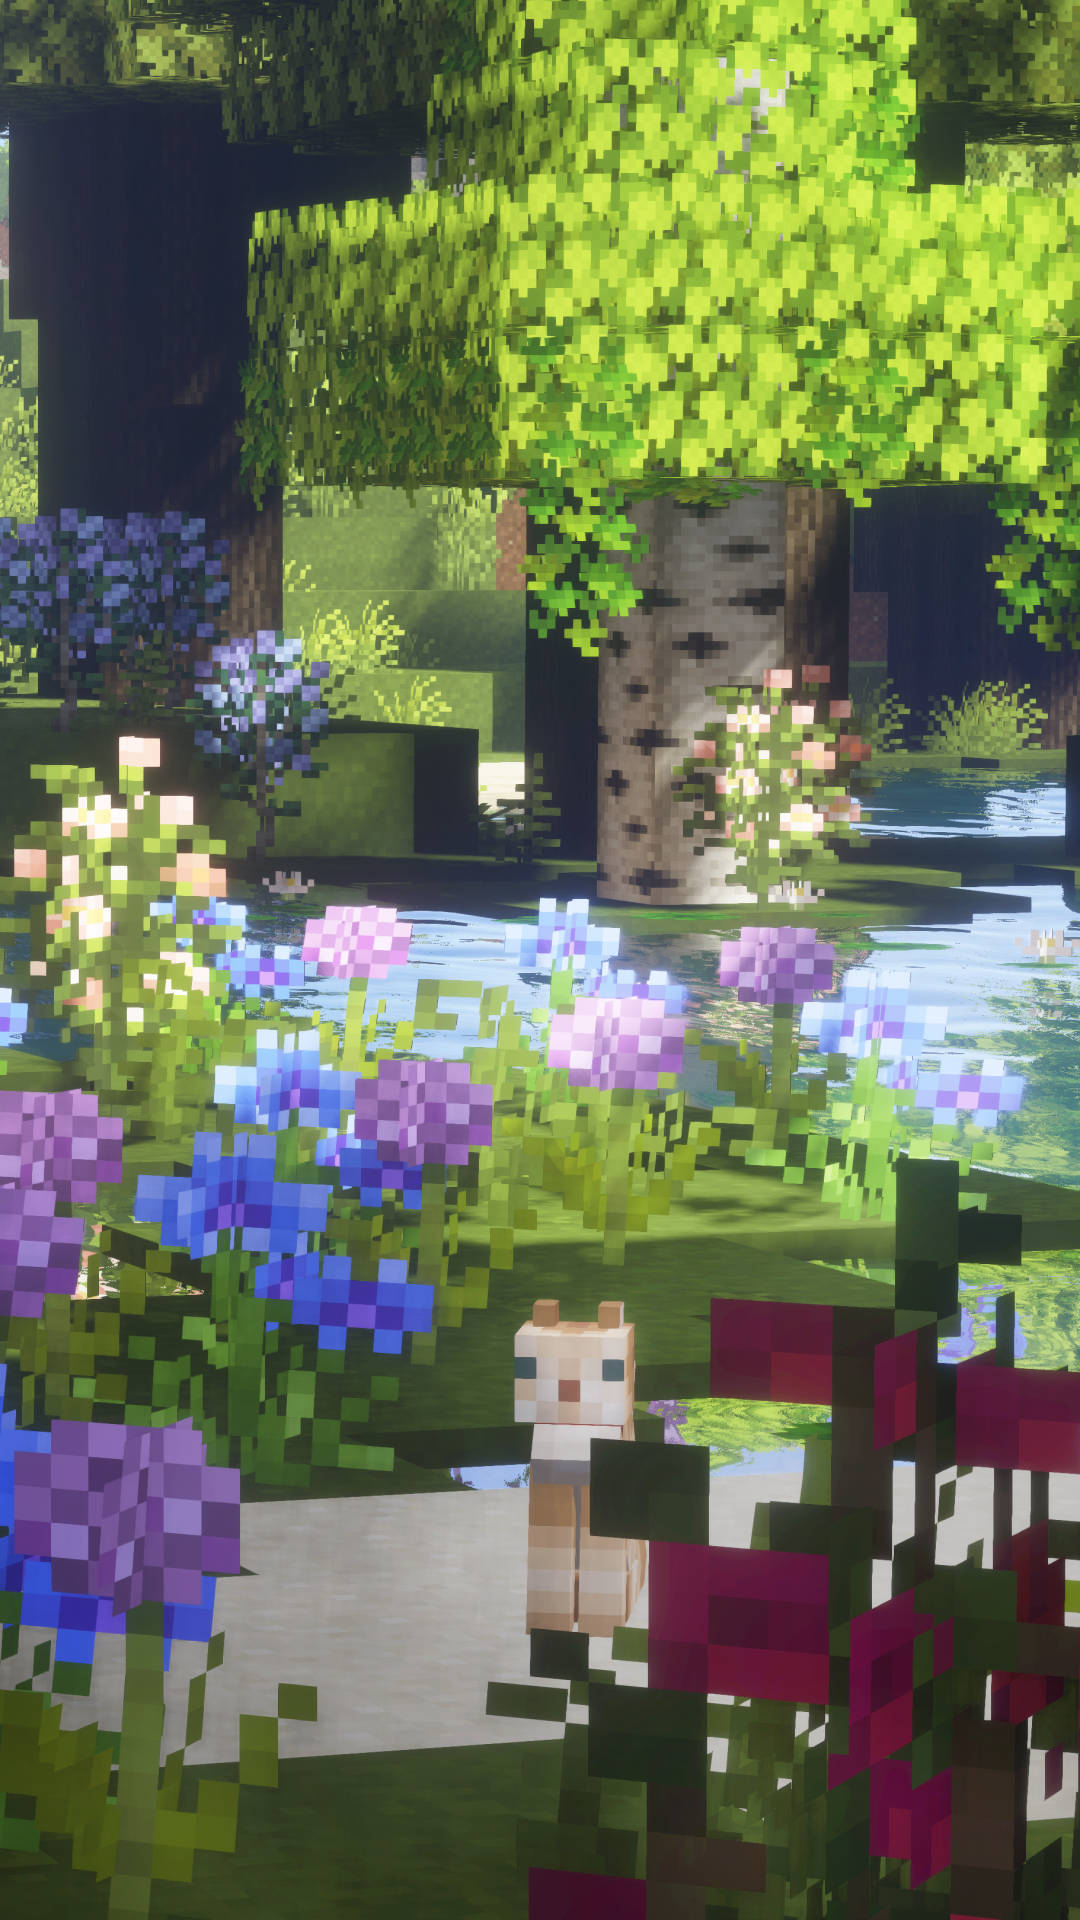 Blooming Flowers In Garden Minecraft Aesthetic